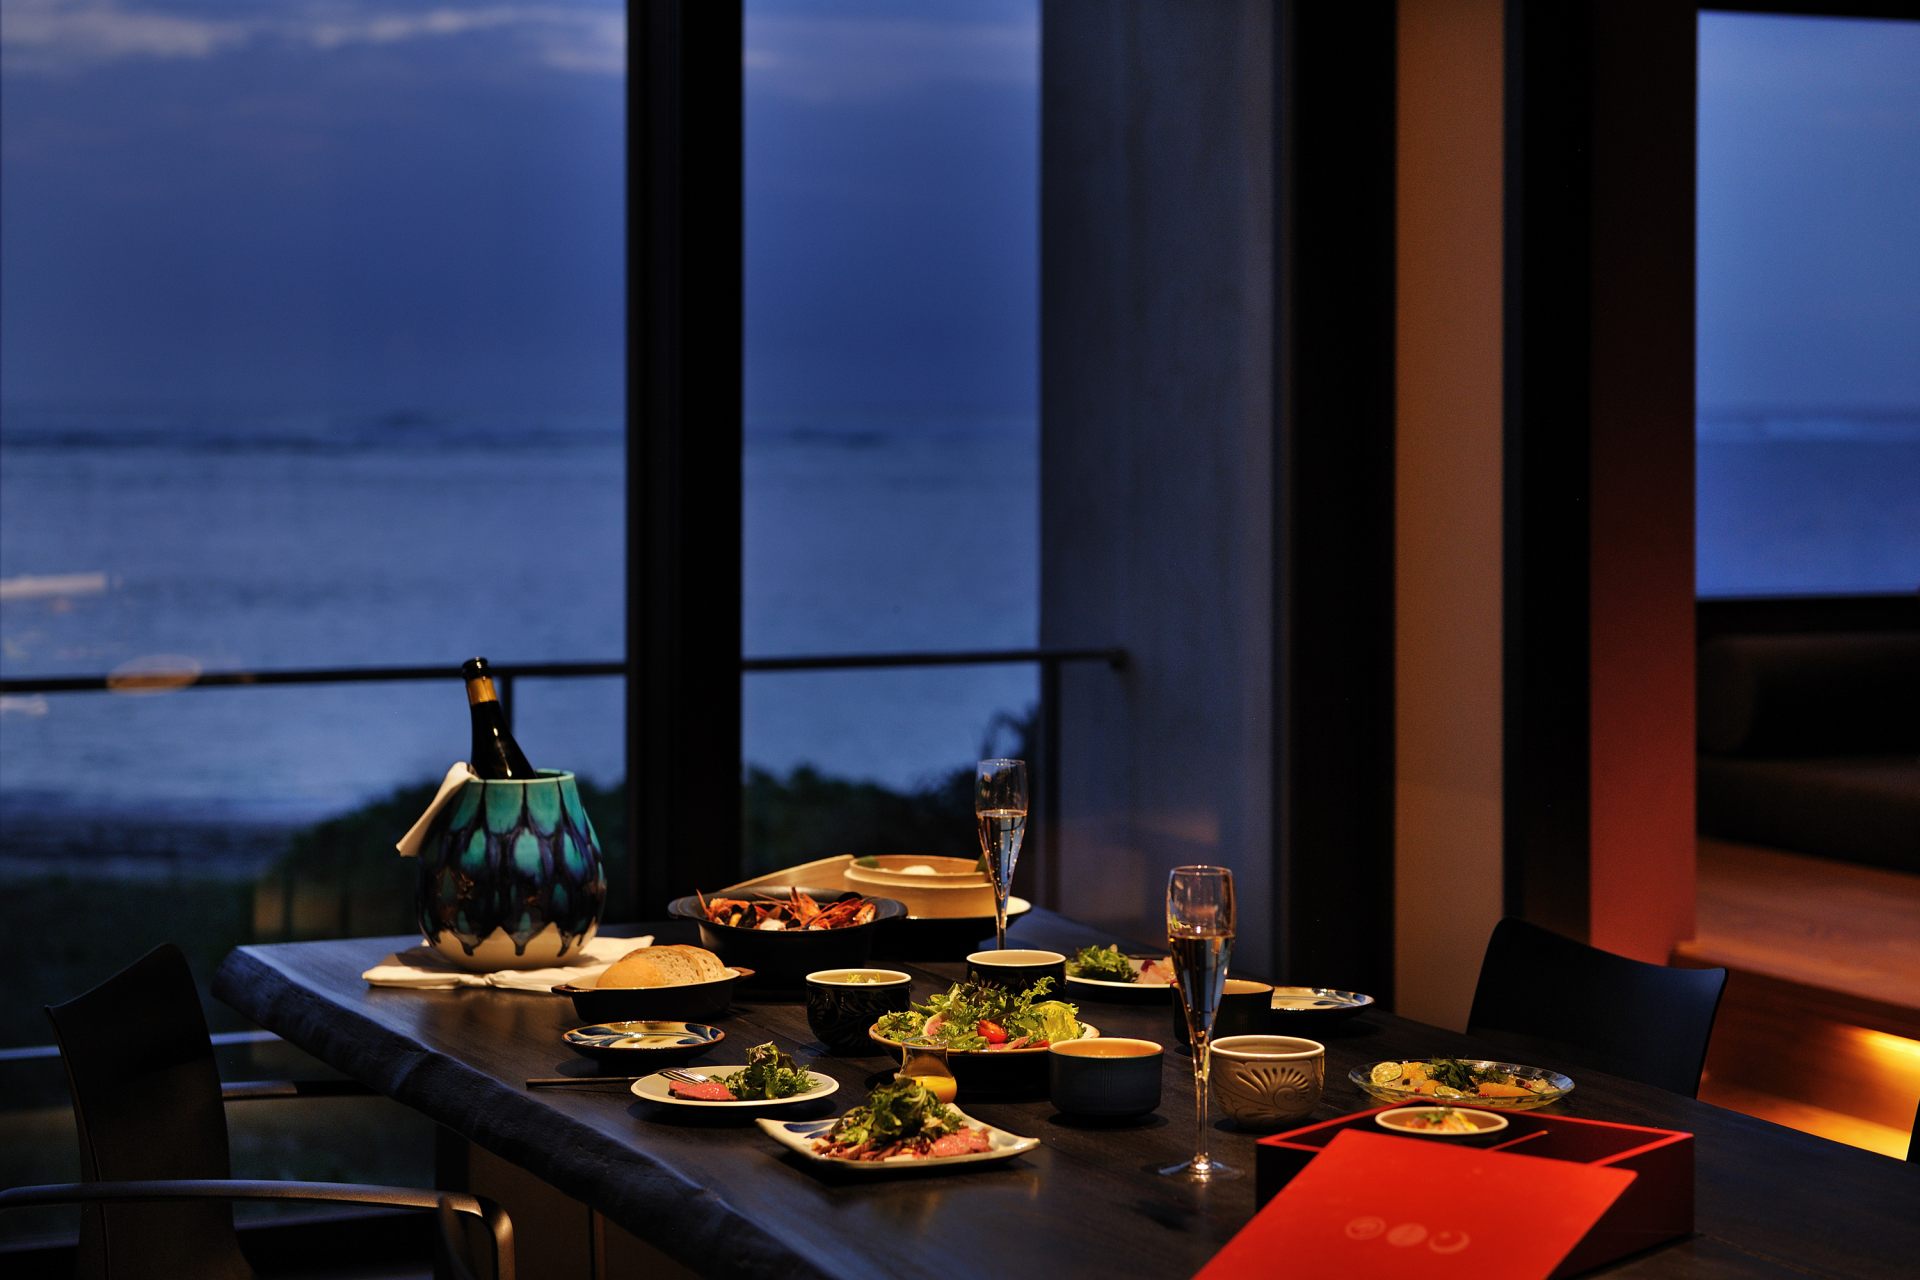 星のや沖縄の客室では「土間ダイニング」と呼ばれるスペースに大きなダイニングテーブルが置かれ、インルームでの朝食や夕食を快適に楽しめる。遠浅の海岸線の眺めは素晴らしく、特に目の前に沈んでいくサンセットは絶景だ。
